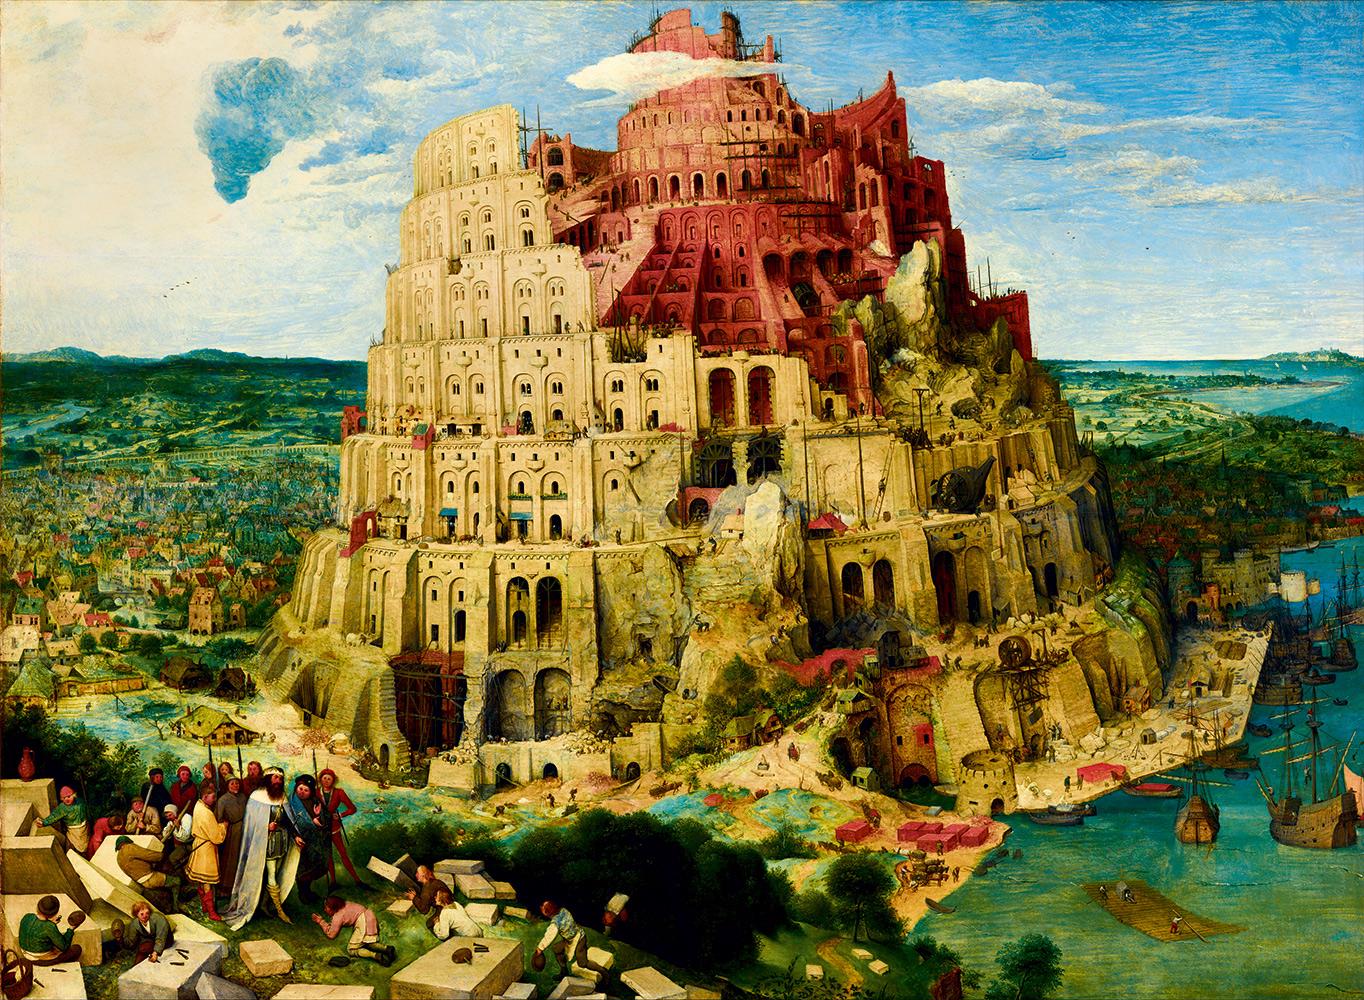 Puzzle Brueghel: Babylonská věž, 1563